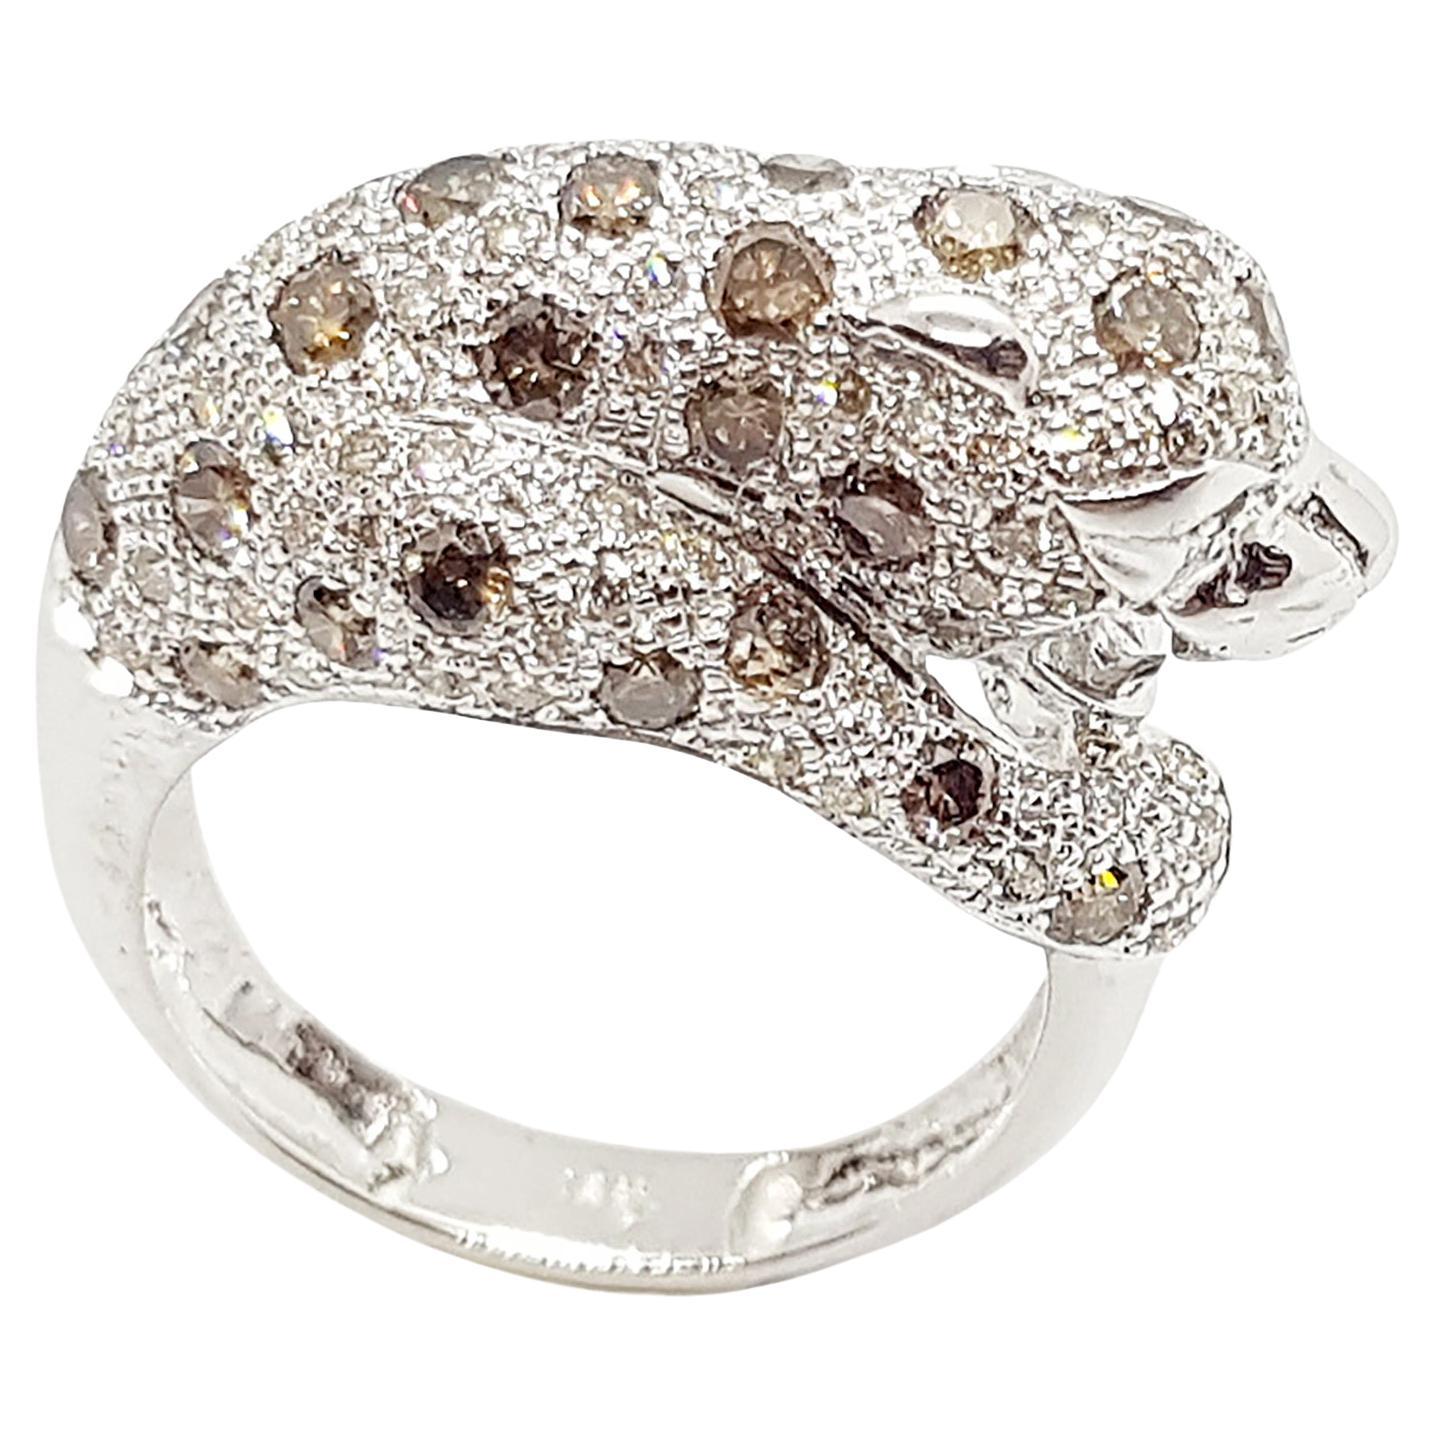 Brown Diamond with Diamond Panther Ring Set in 18 Karat White Gold Setting